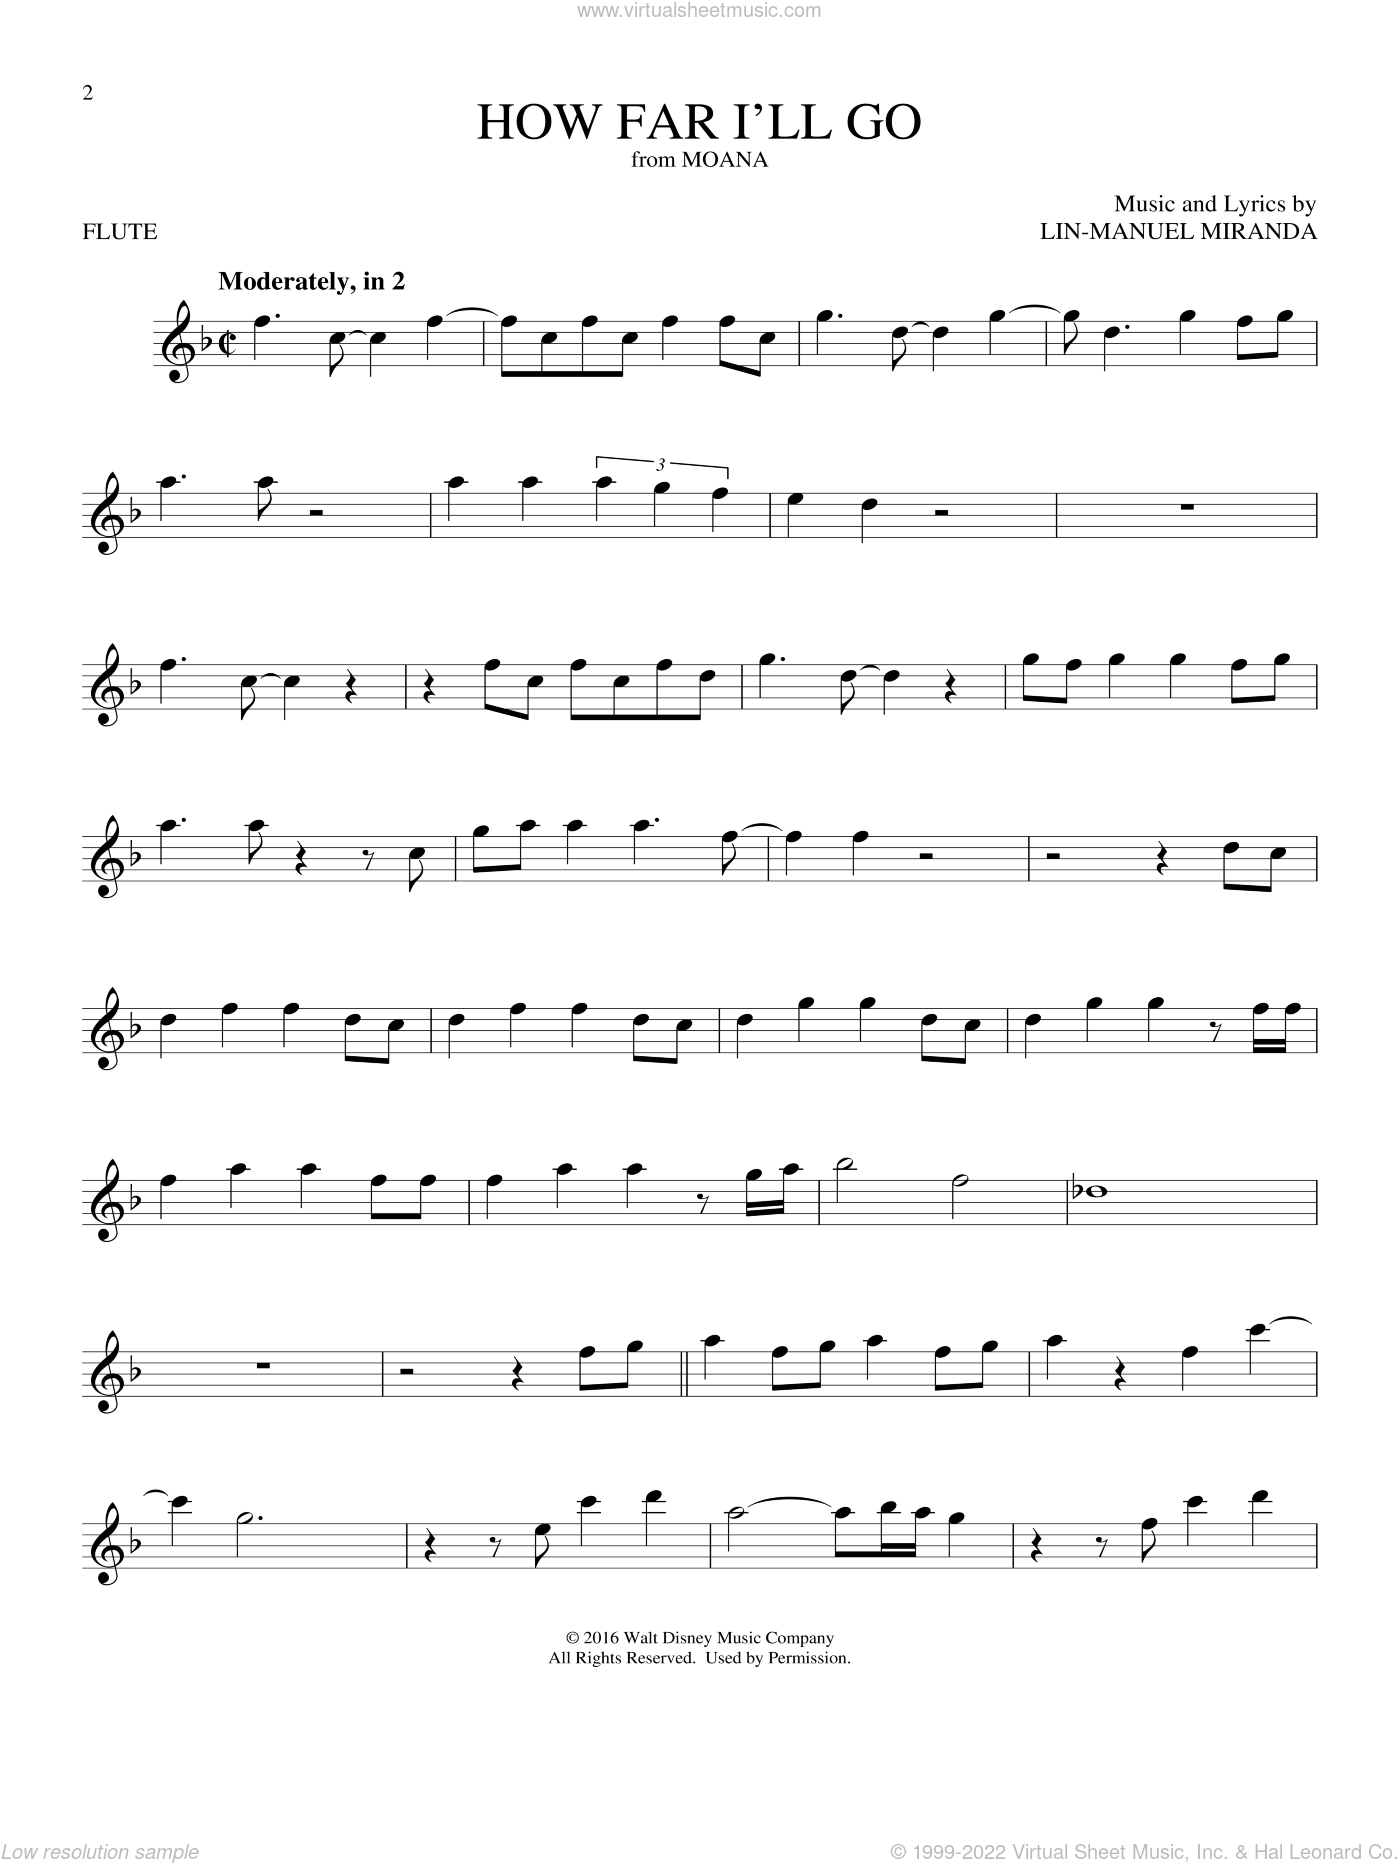 How far i'll go flute sheet music